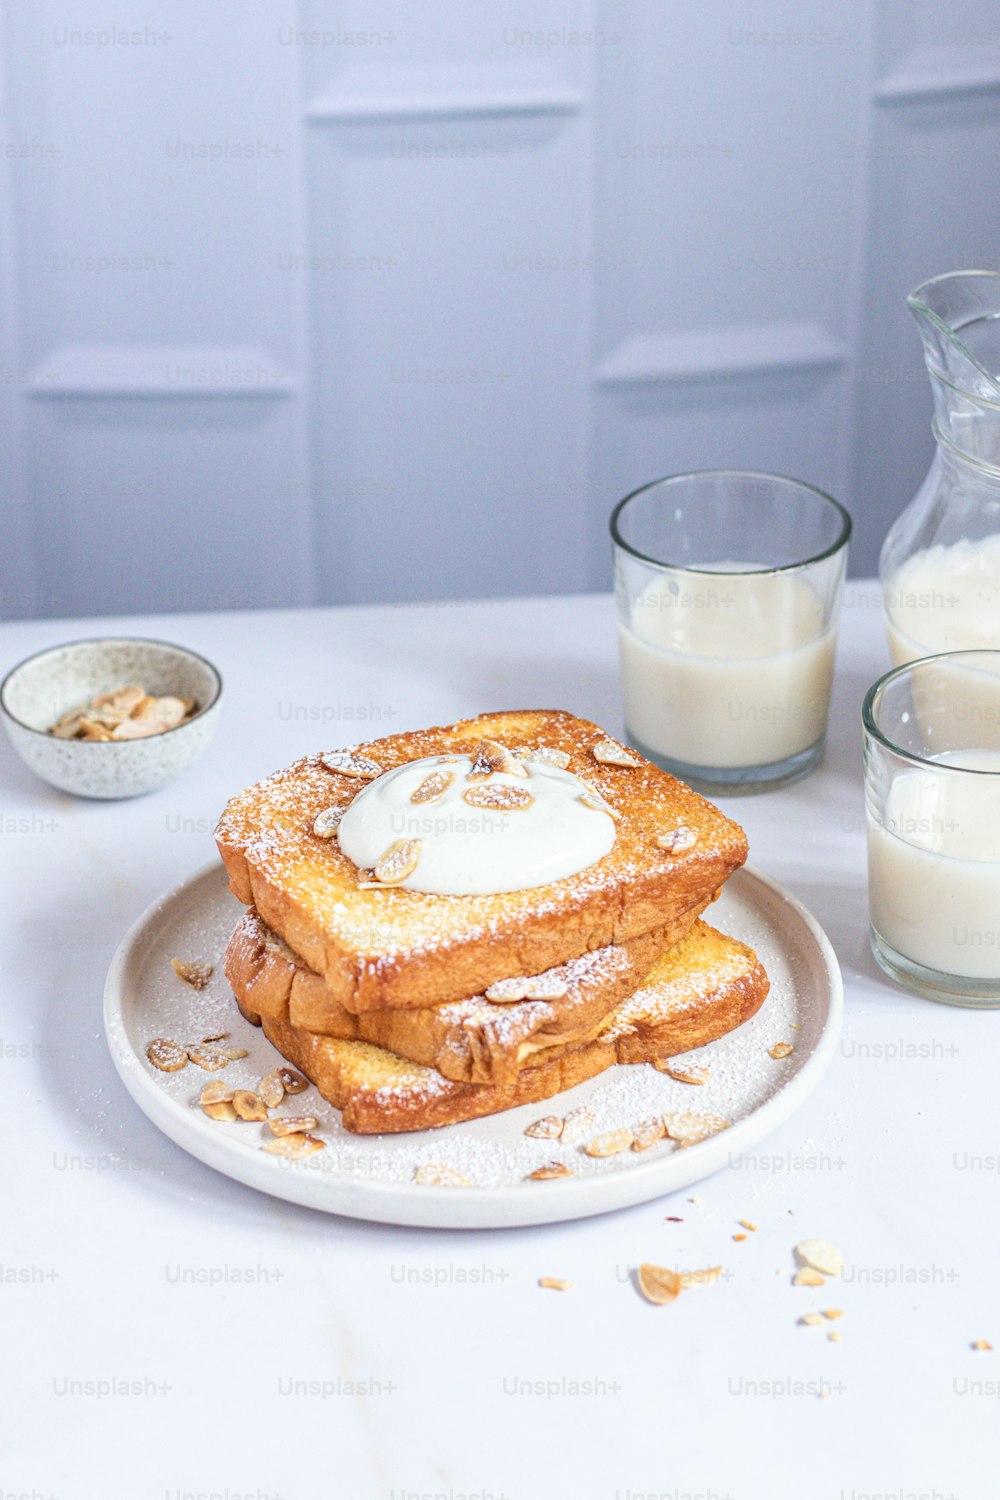 Un piatto bianco condito con french toast ricoperto di zucchero a velo